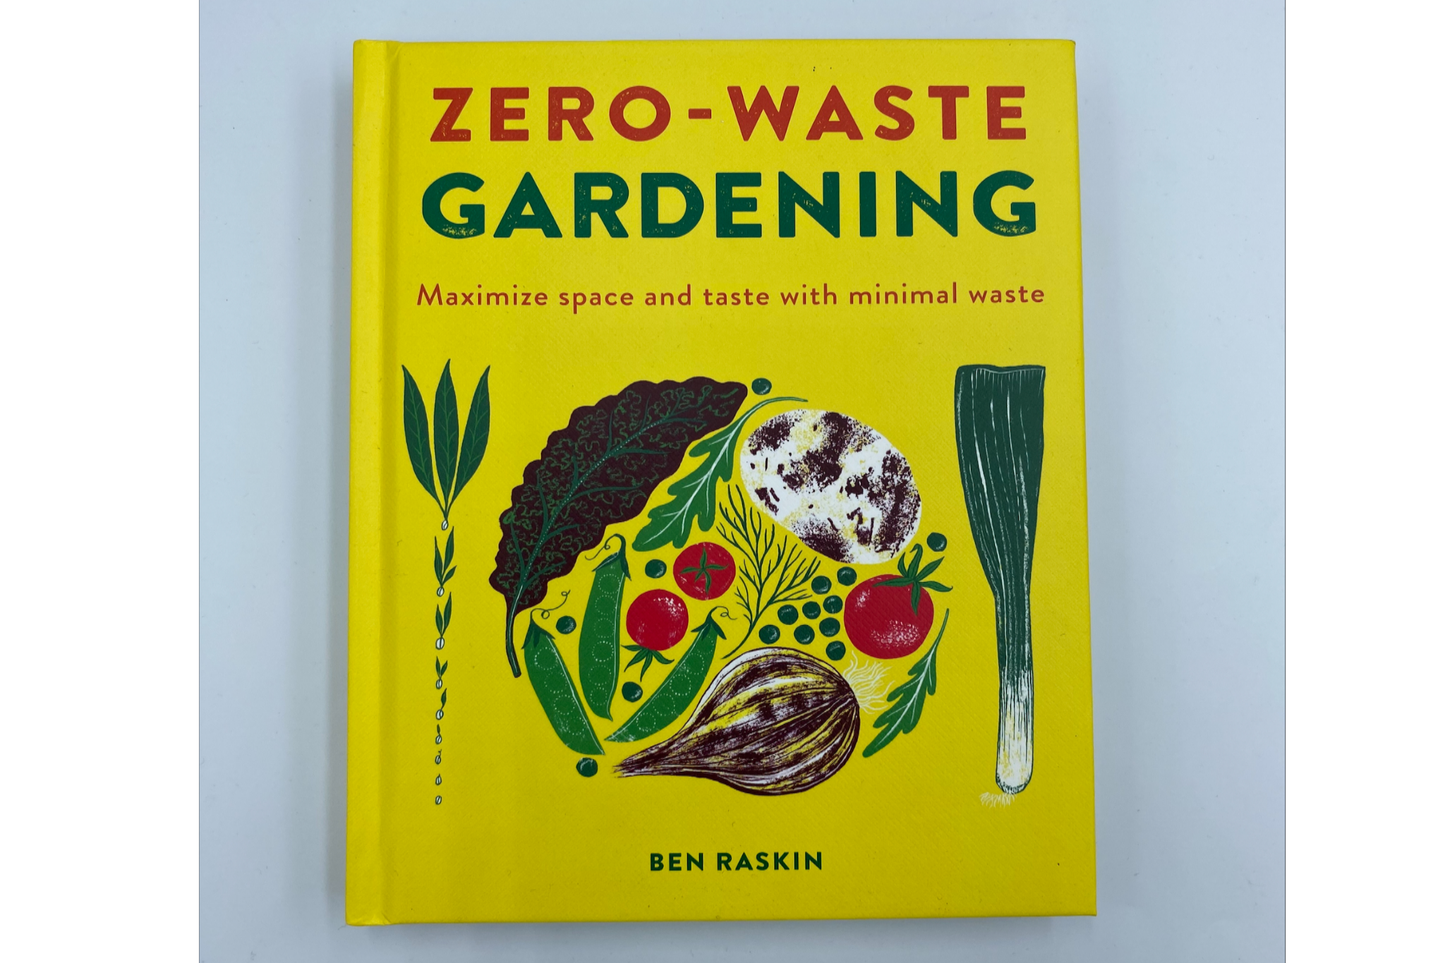 Zero-Waste Gardening